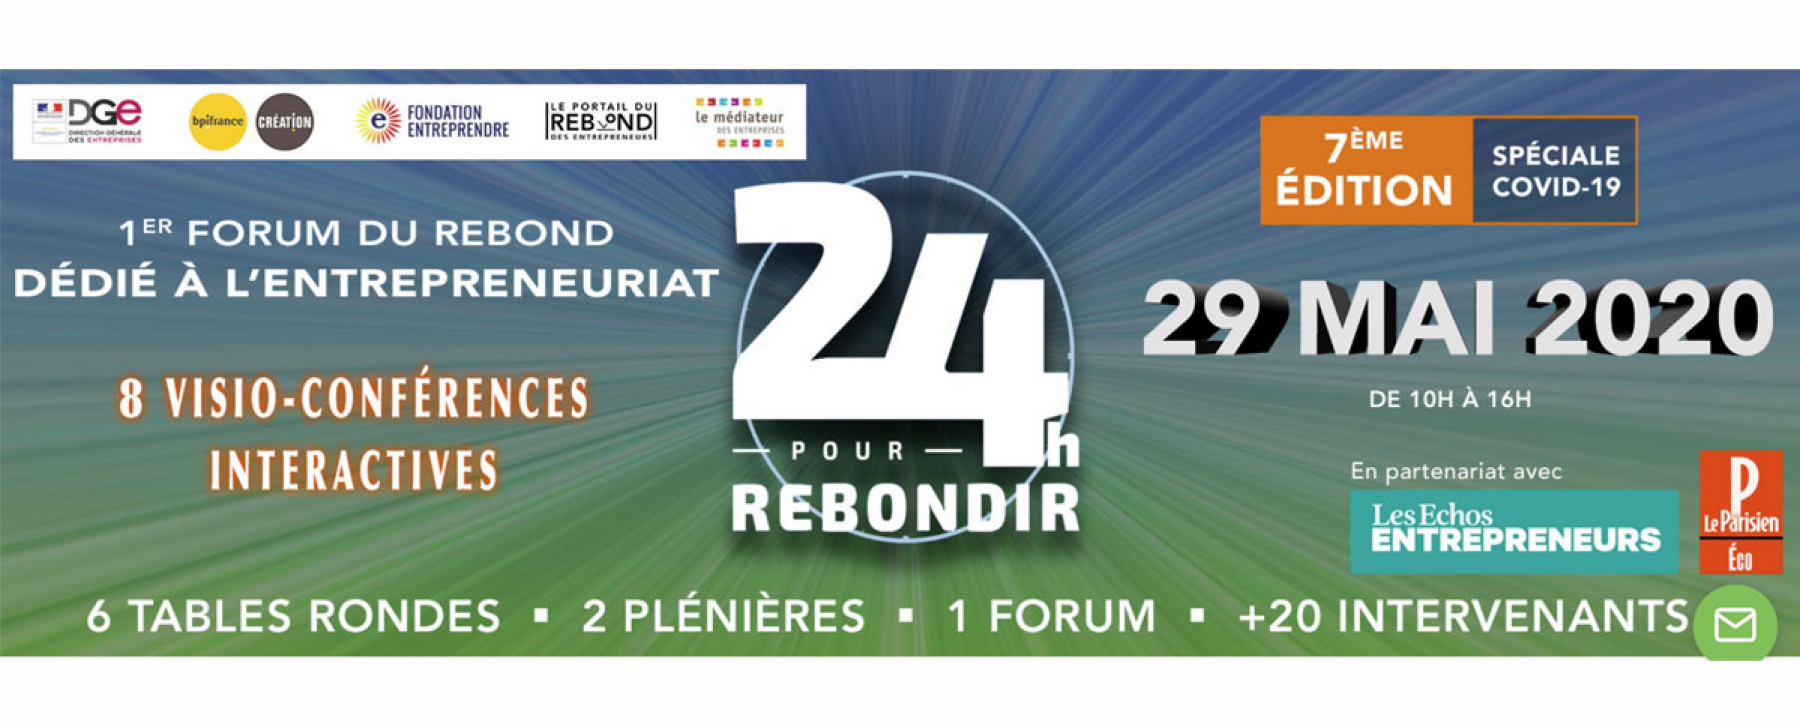 Webinar 24h pour rebondir, organisé par Second Souffle, le 29 mai 2020